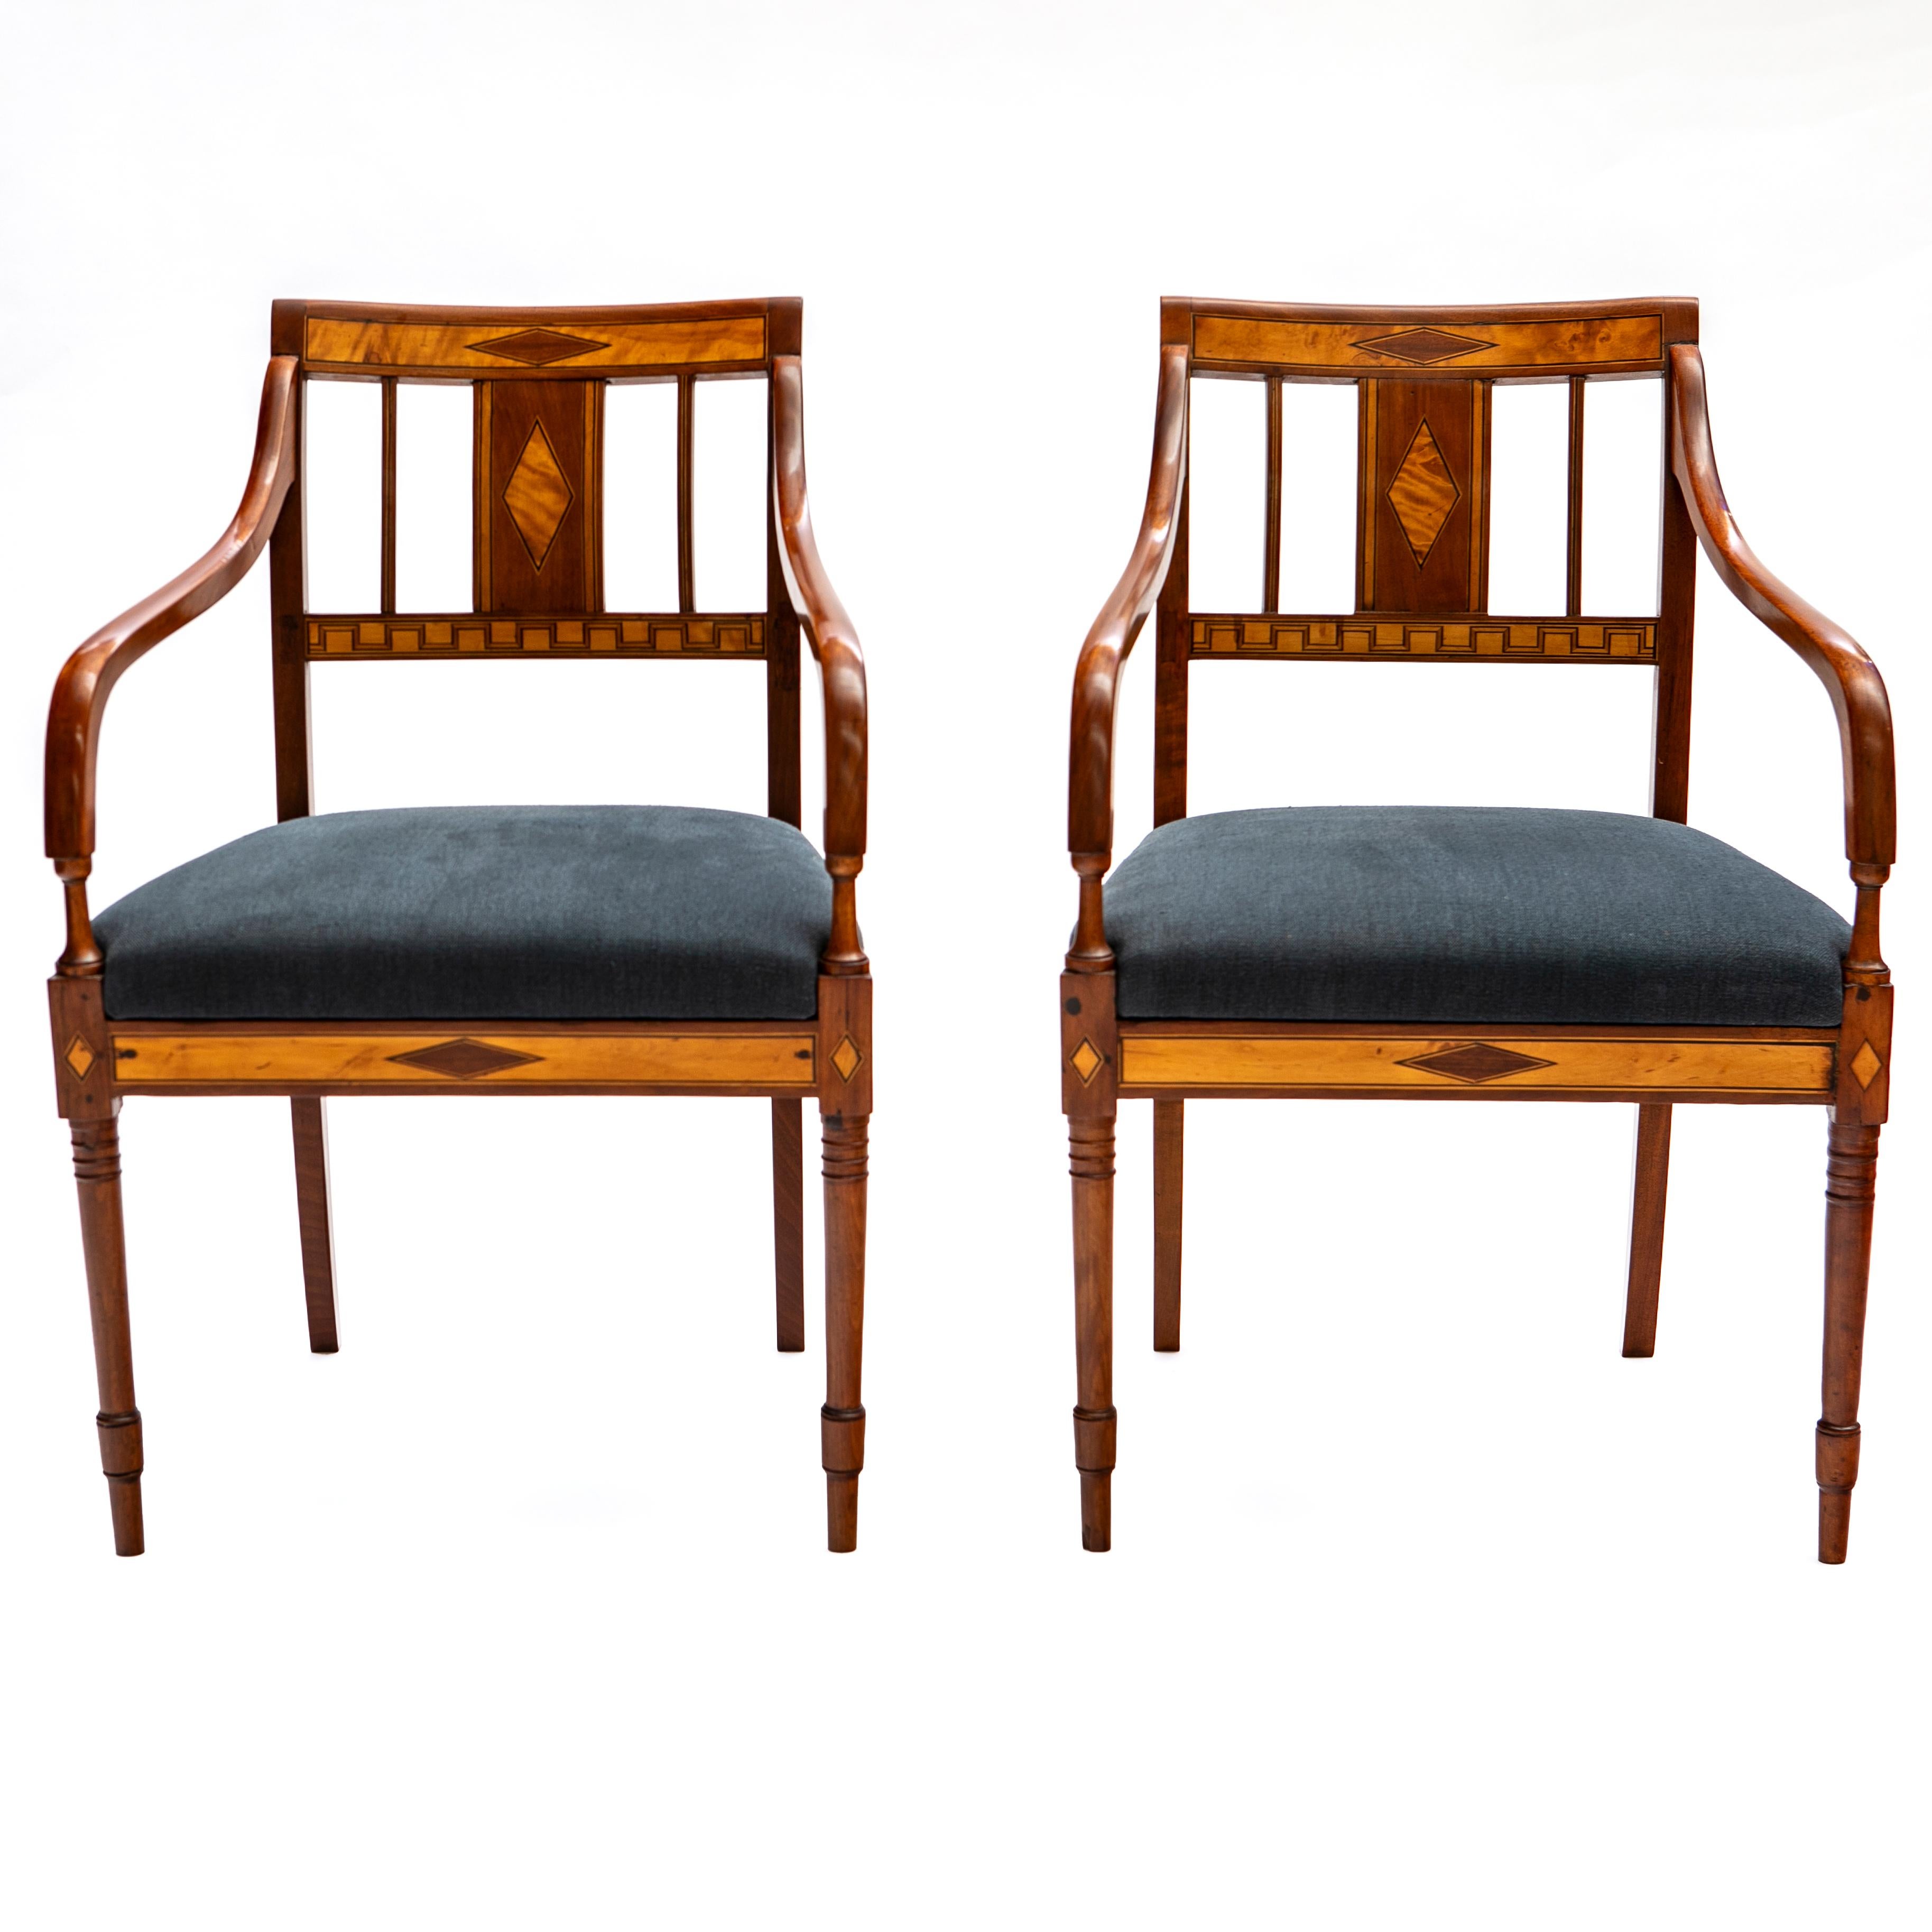 Ein Paar elegante dänische Empire-Sessel des frühen 19. Jahrhunderts.
Gefertigt aus Mahagoni mit Intarsien aus Ebenholz und Satinholz auf Rückenlehne und Schürze.
Schürze und oberer Teil der Rückenlehne mit rautenförmigen Intarsien verziert. Der